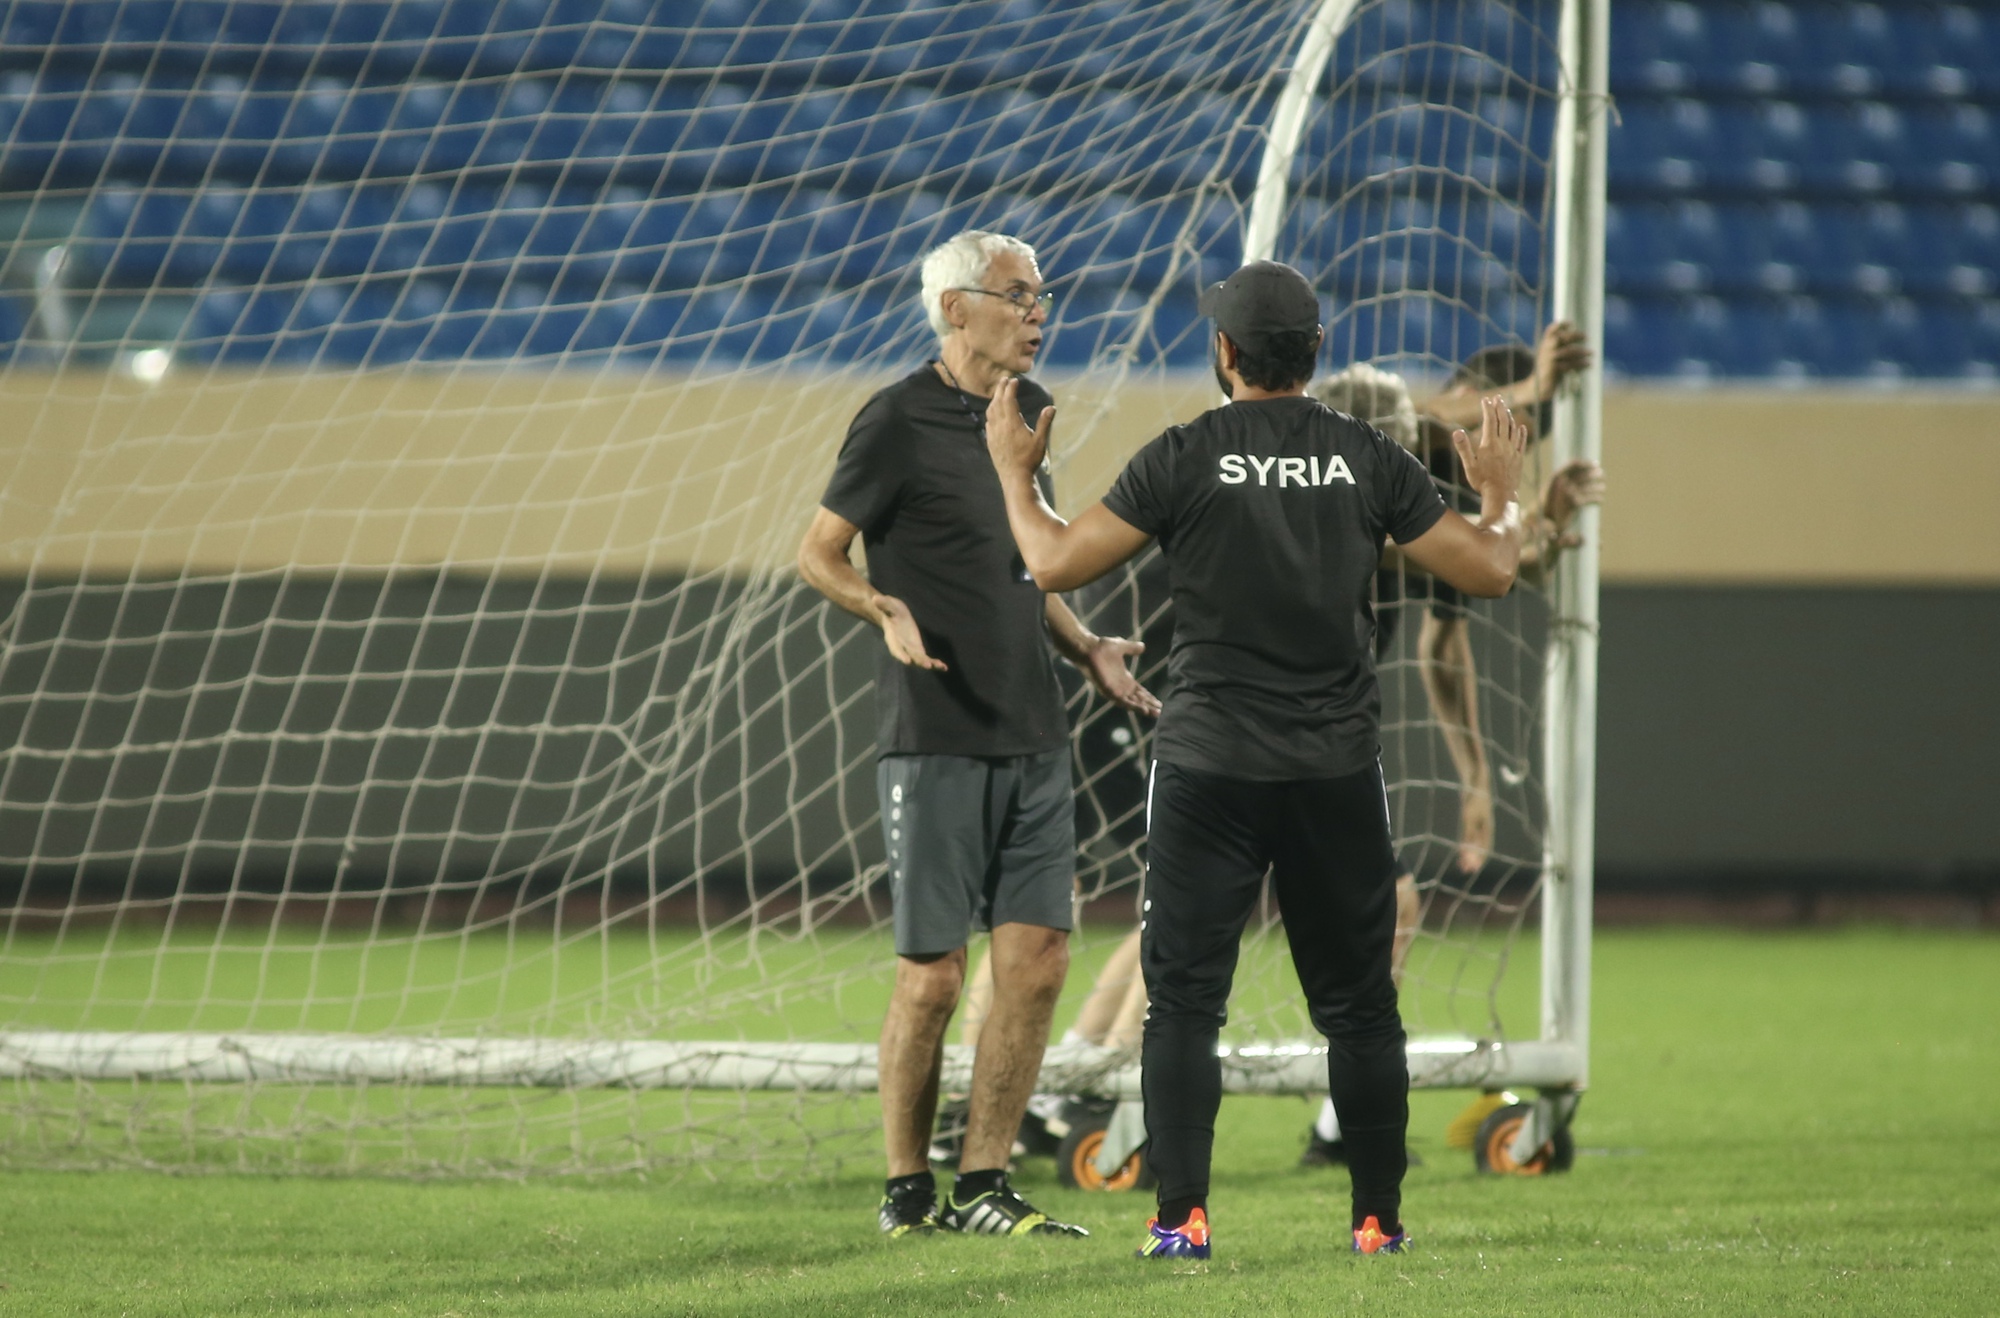 HLV Hector Cuper kiểm tra mặt sân, đội Syria tập bài cực 'dị' trước ngày đấu Việt Nam - Ảnh 7.